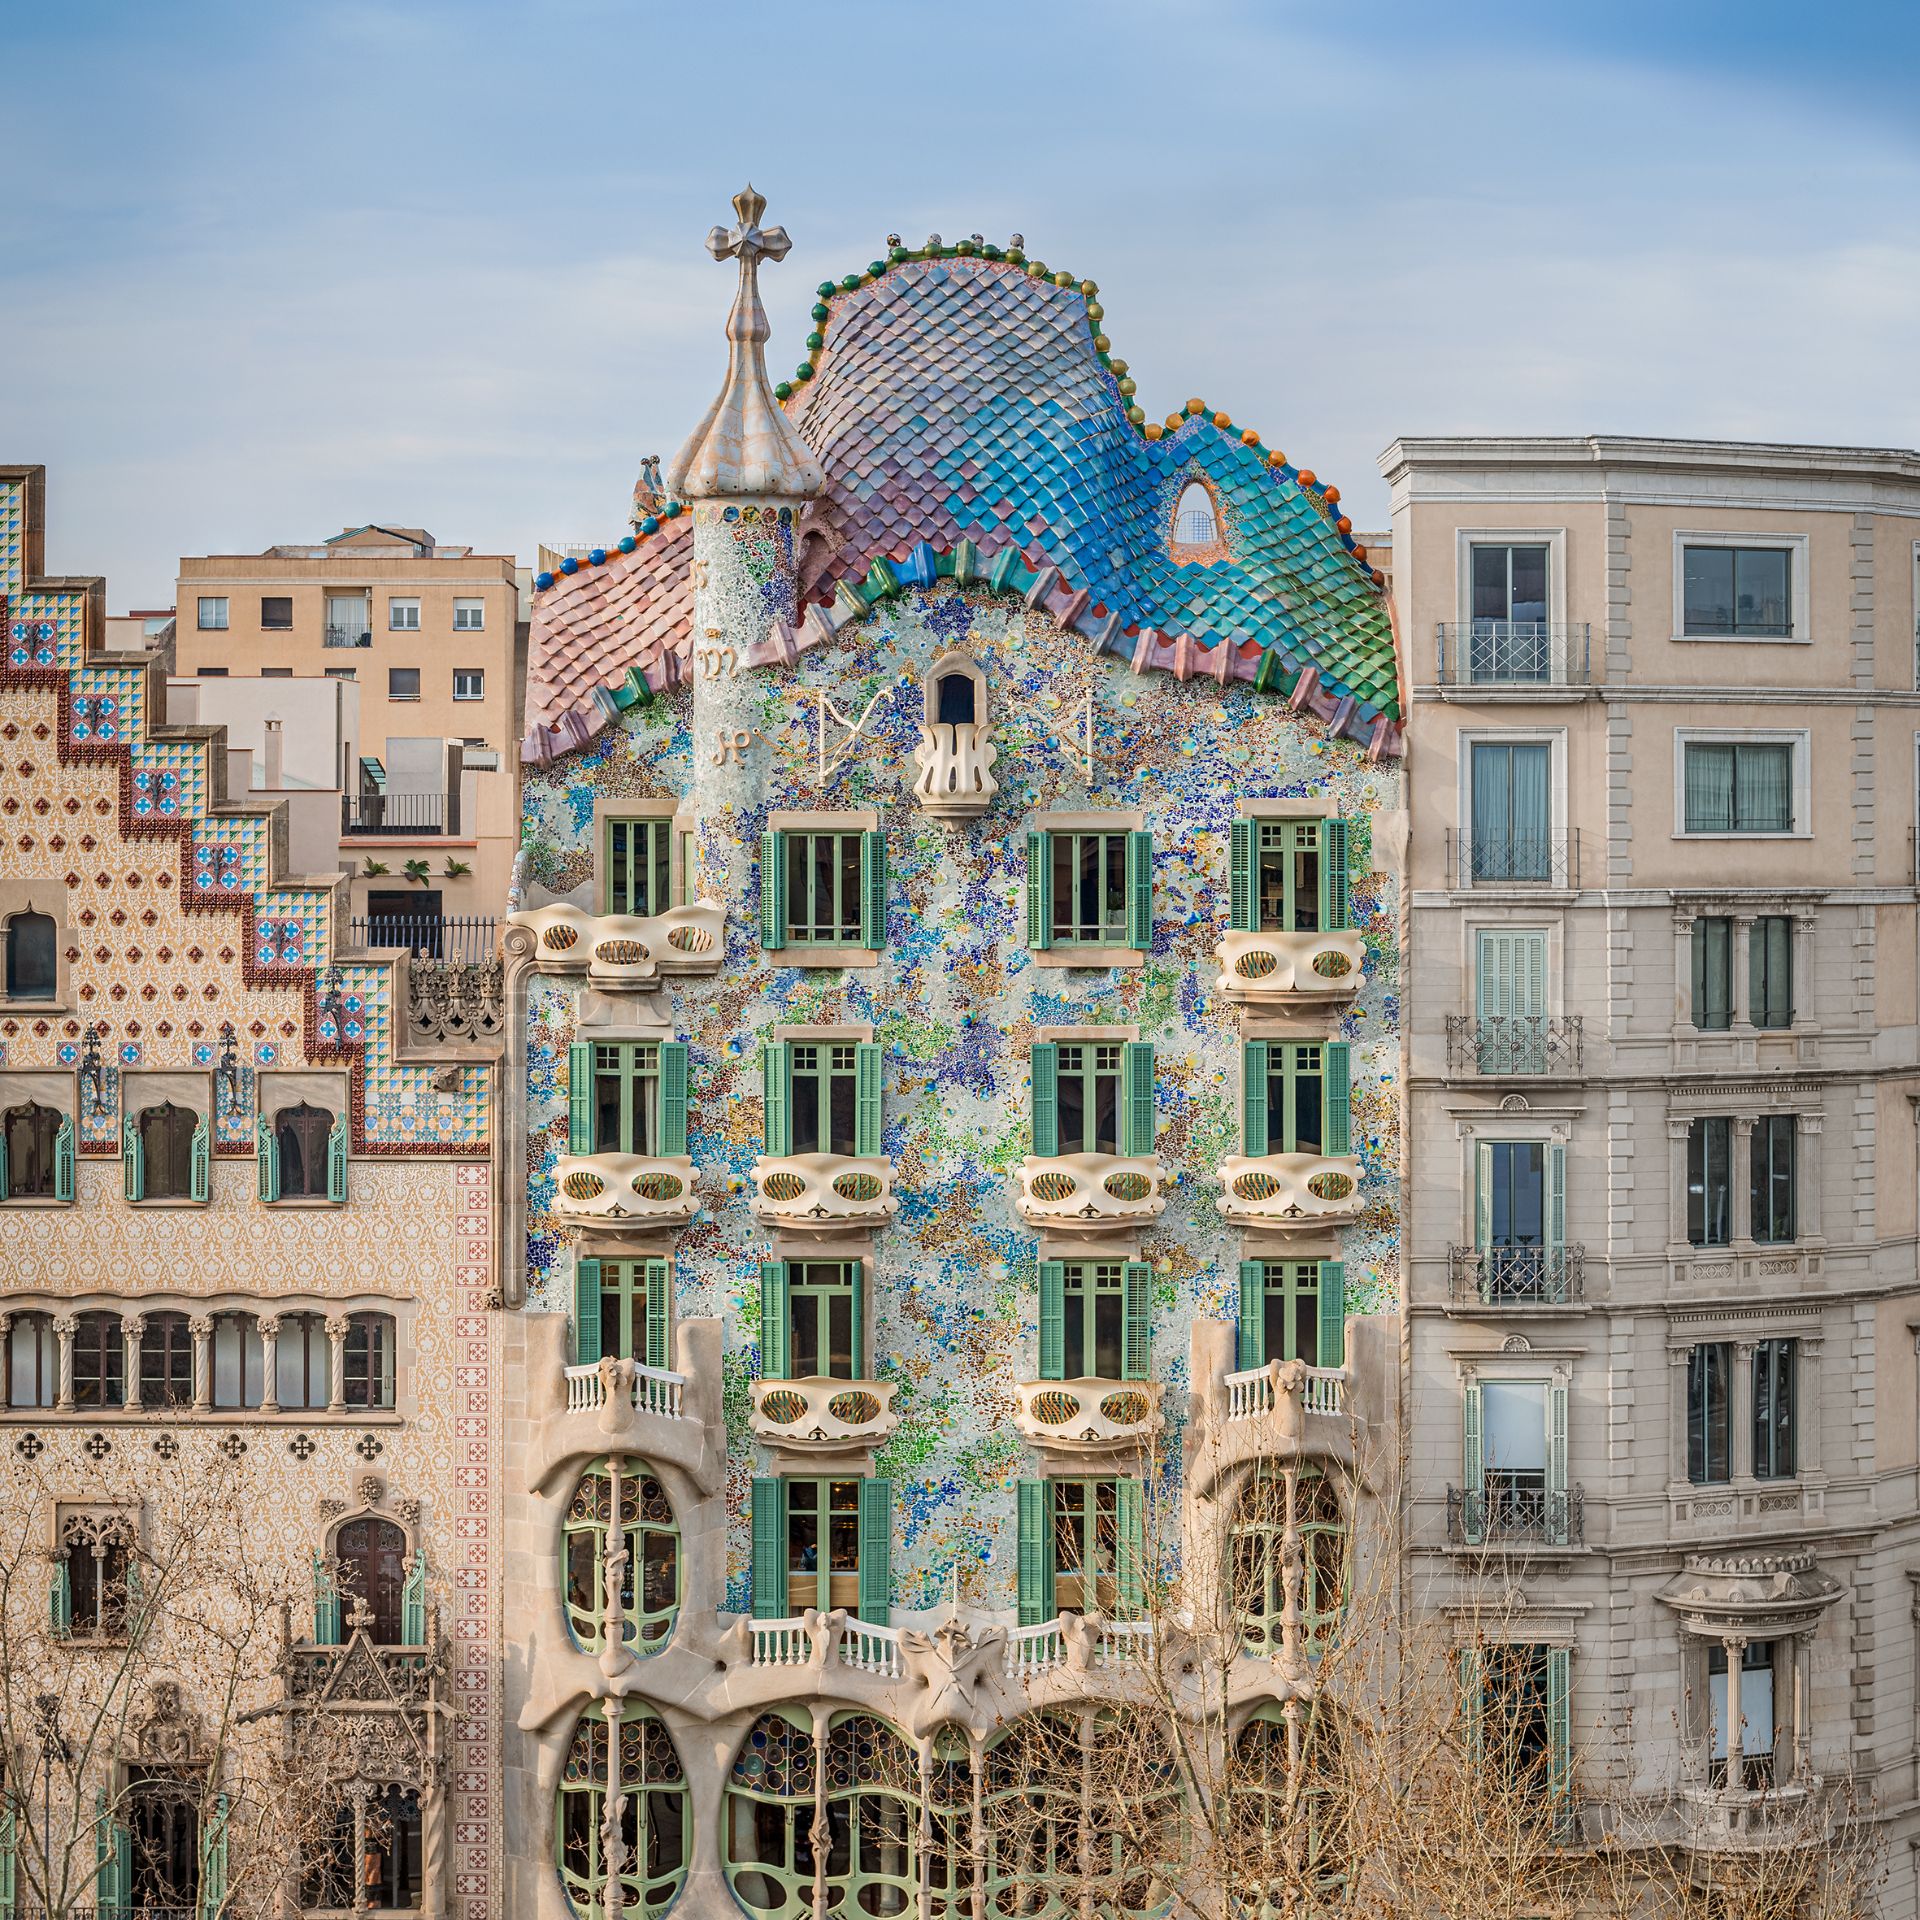 Is Gaudi’s Casa Batlló worth a visit?